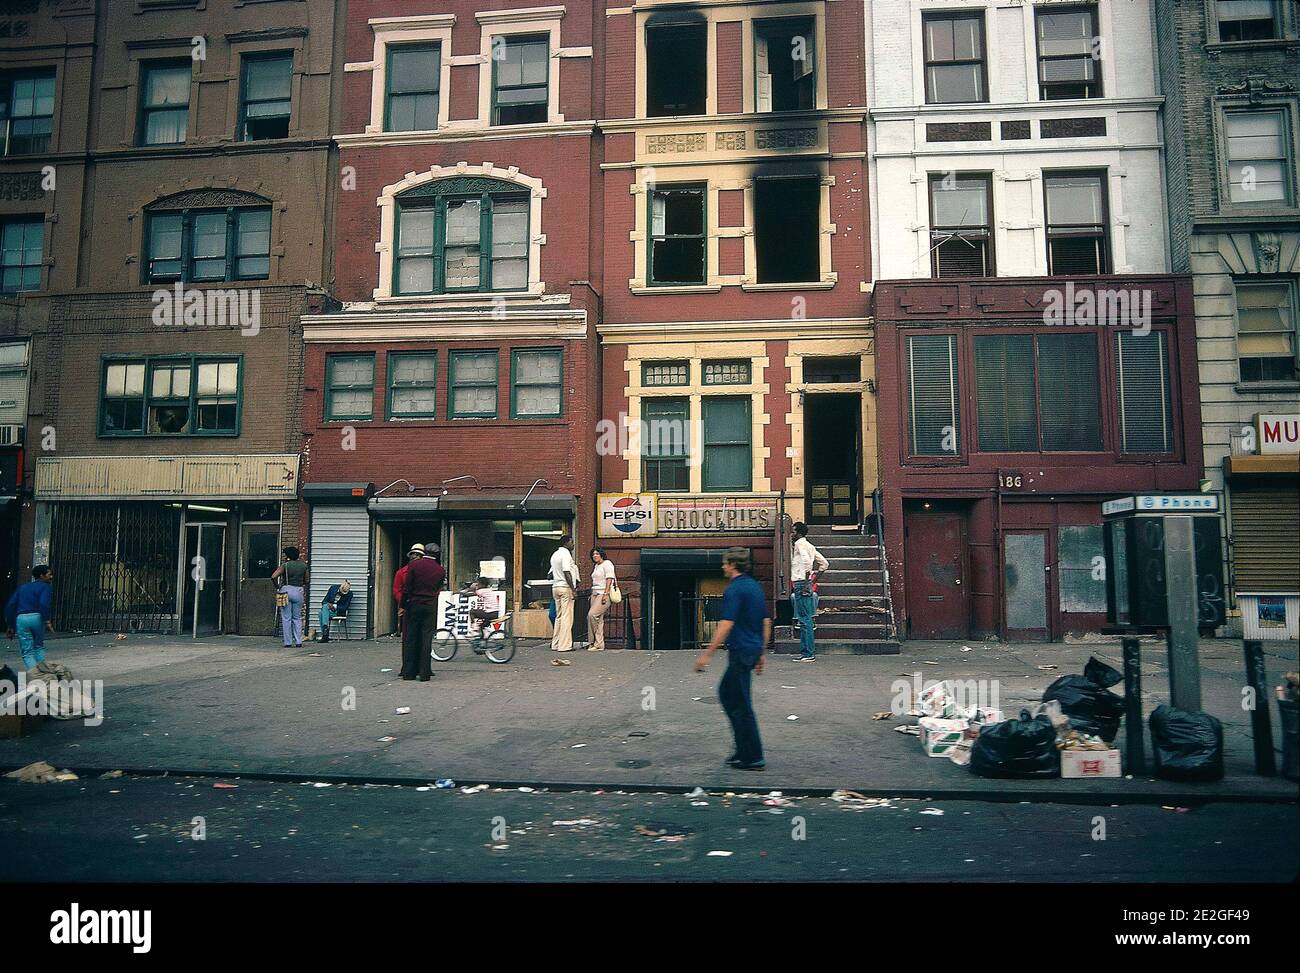 Stati Uniti, New York: Atmosfera in una strada di Harlem nel 1981. Passersby e residenti di Harlem su un marciapiede fuori un negozio di alimentari, 'generi alimentari Foto Stock